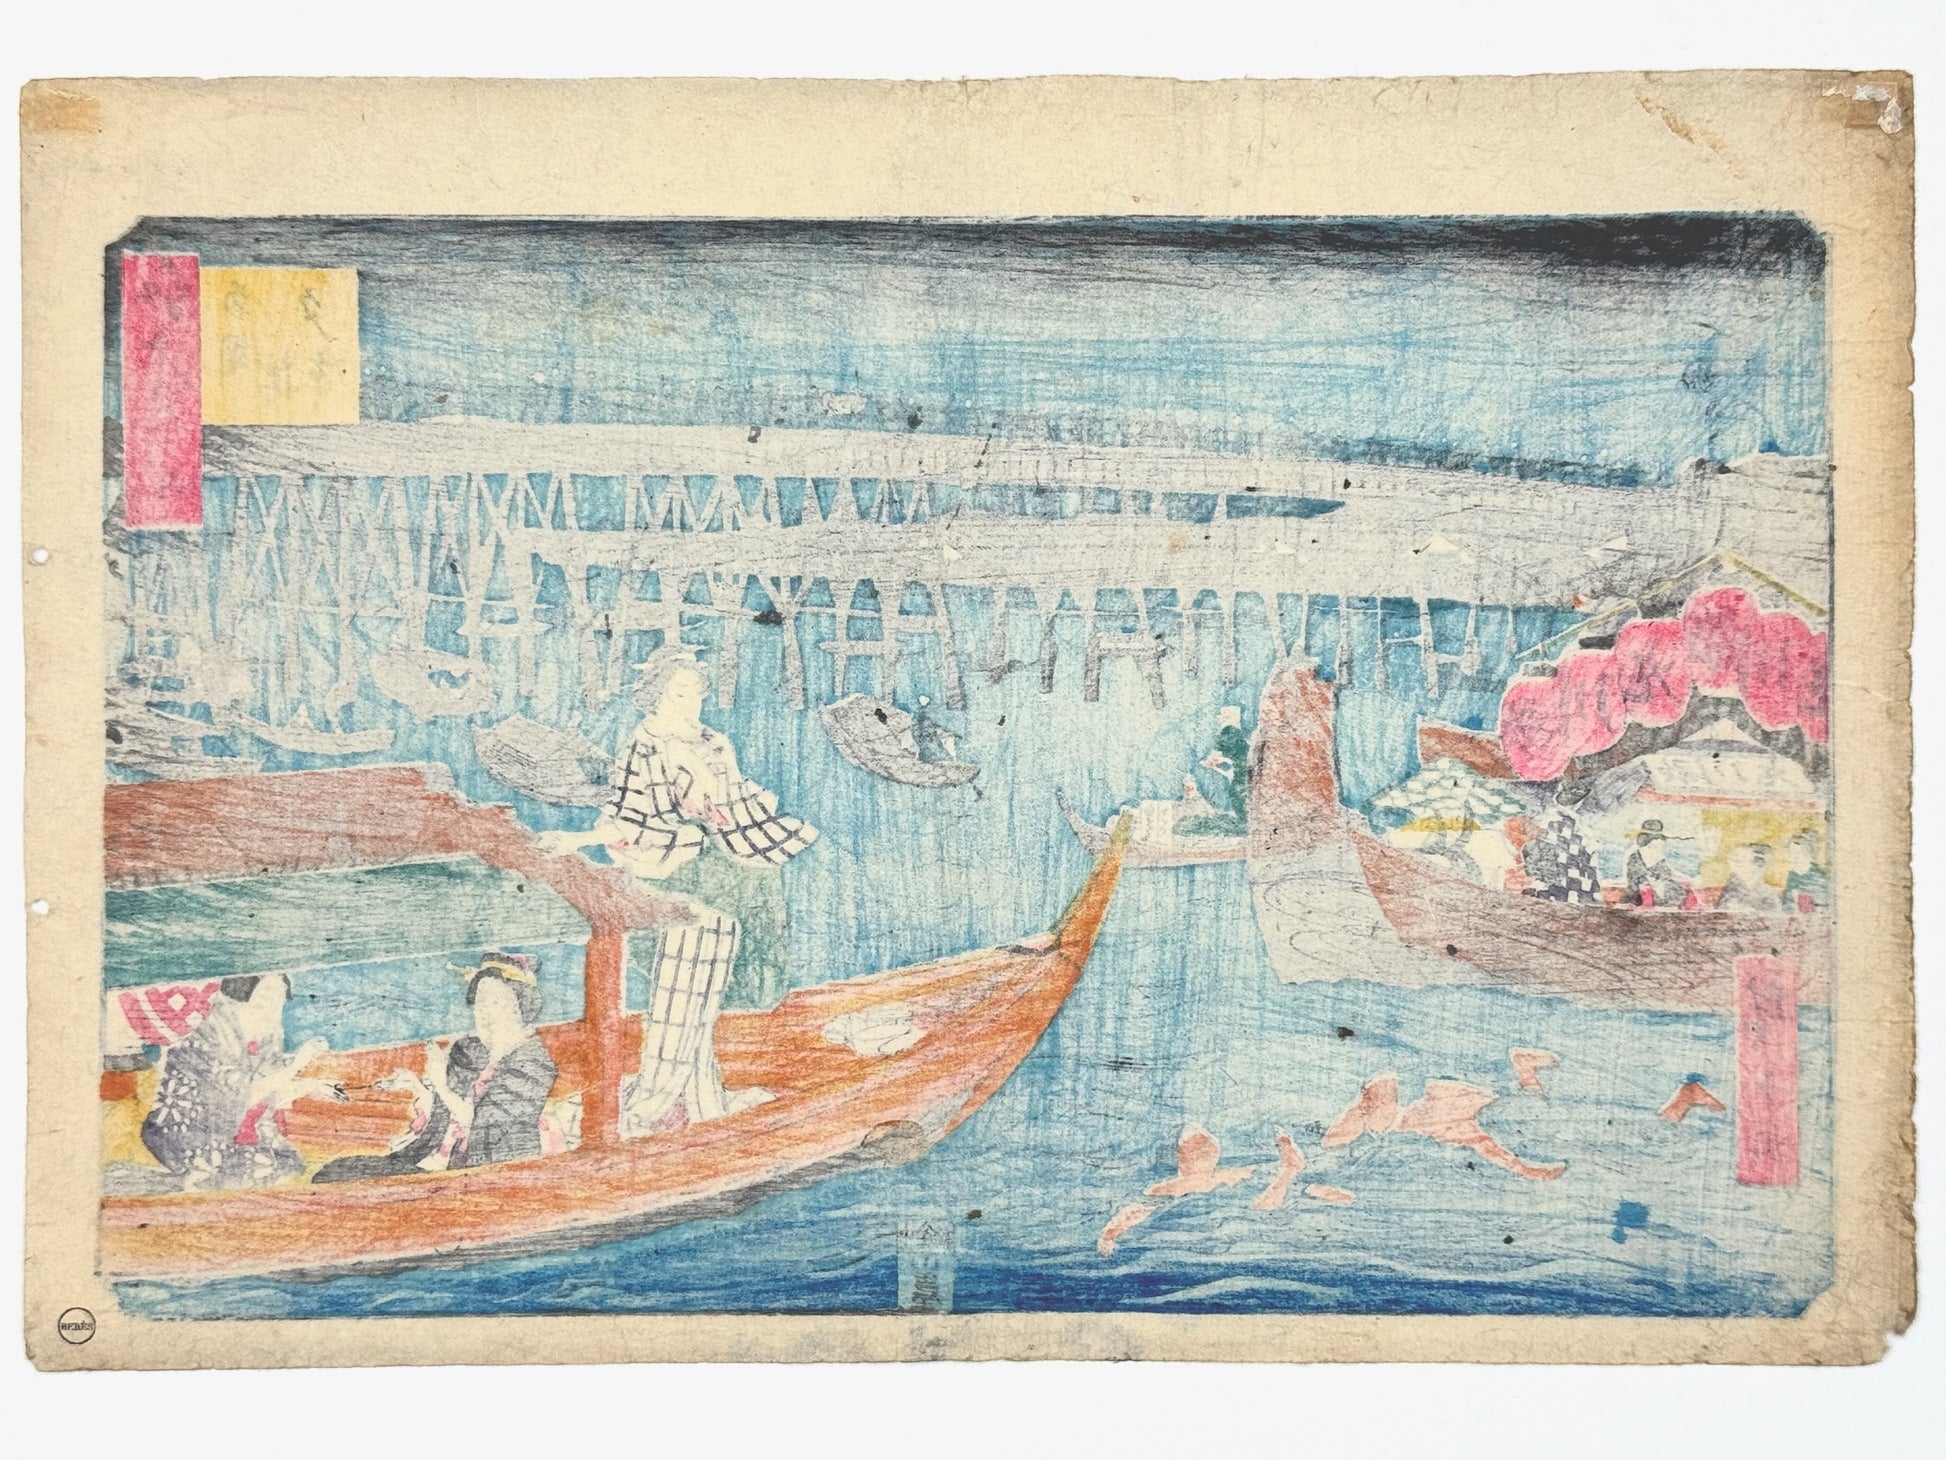 estampe hiroshige edo meisho pont ryogoku femmes dans bateaux lanternes nageurs dos de l'estampe